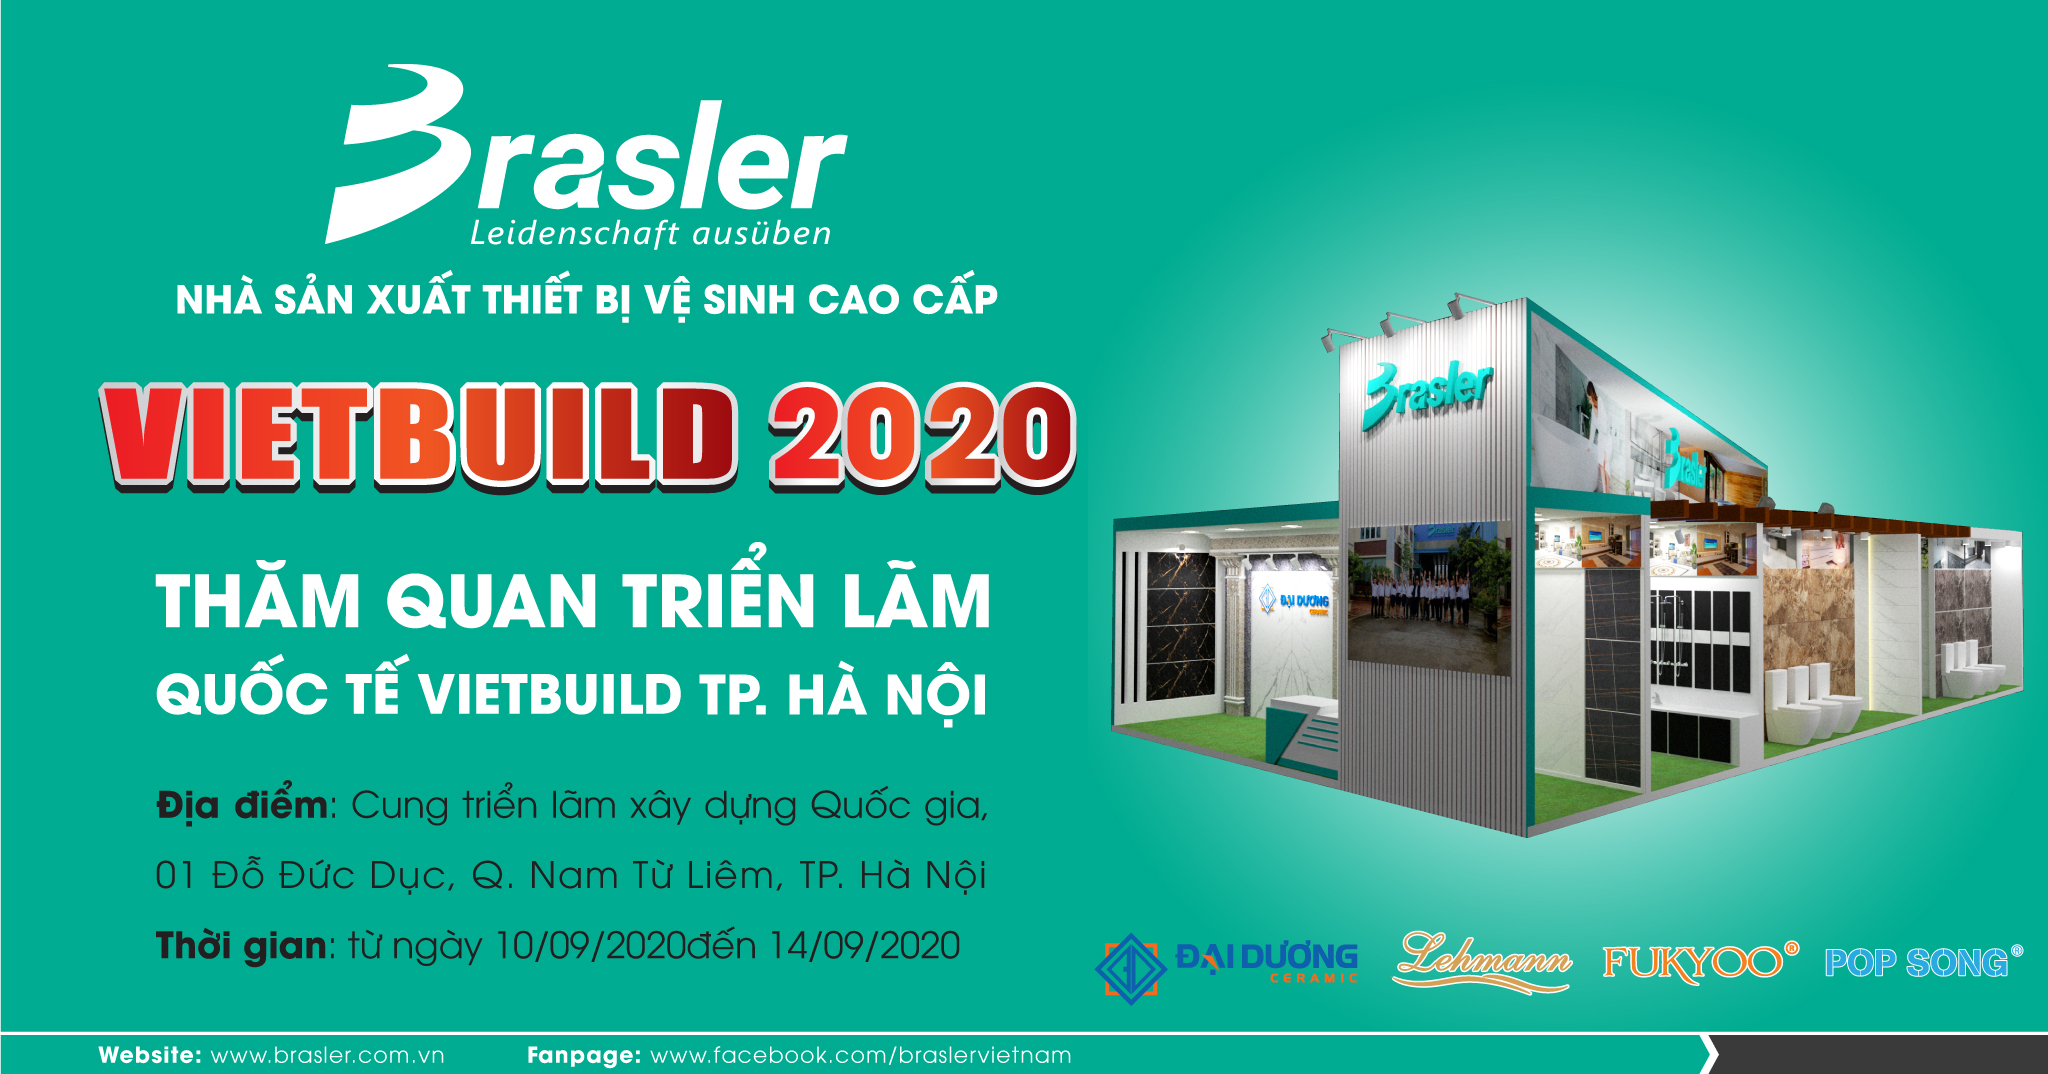 Triển lãm Vietbuild Hà Nội 2020